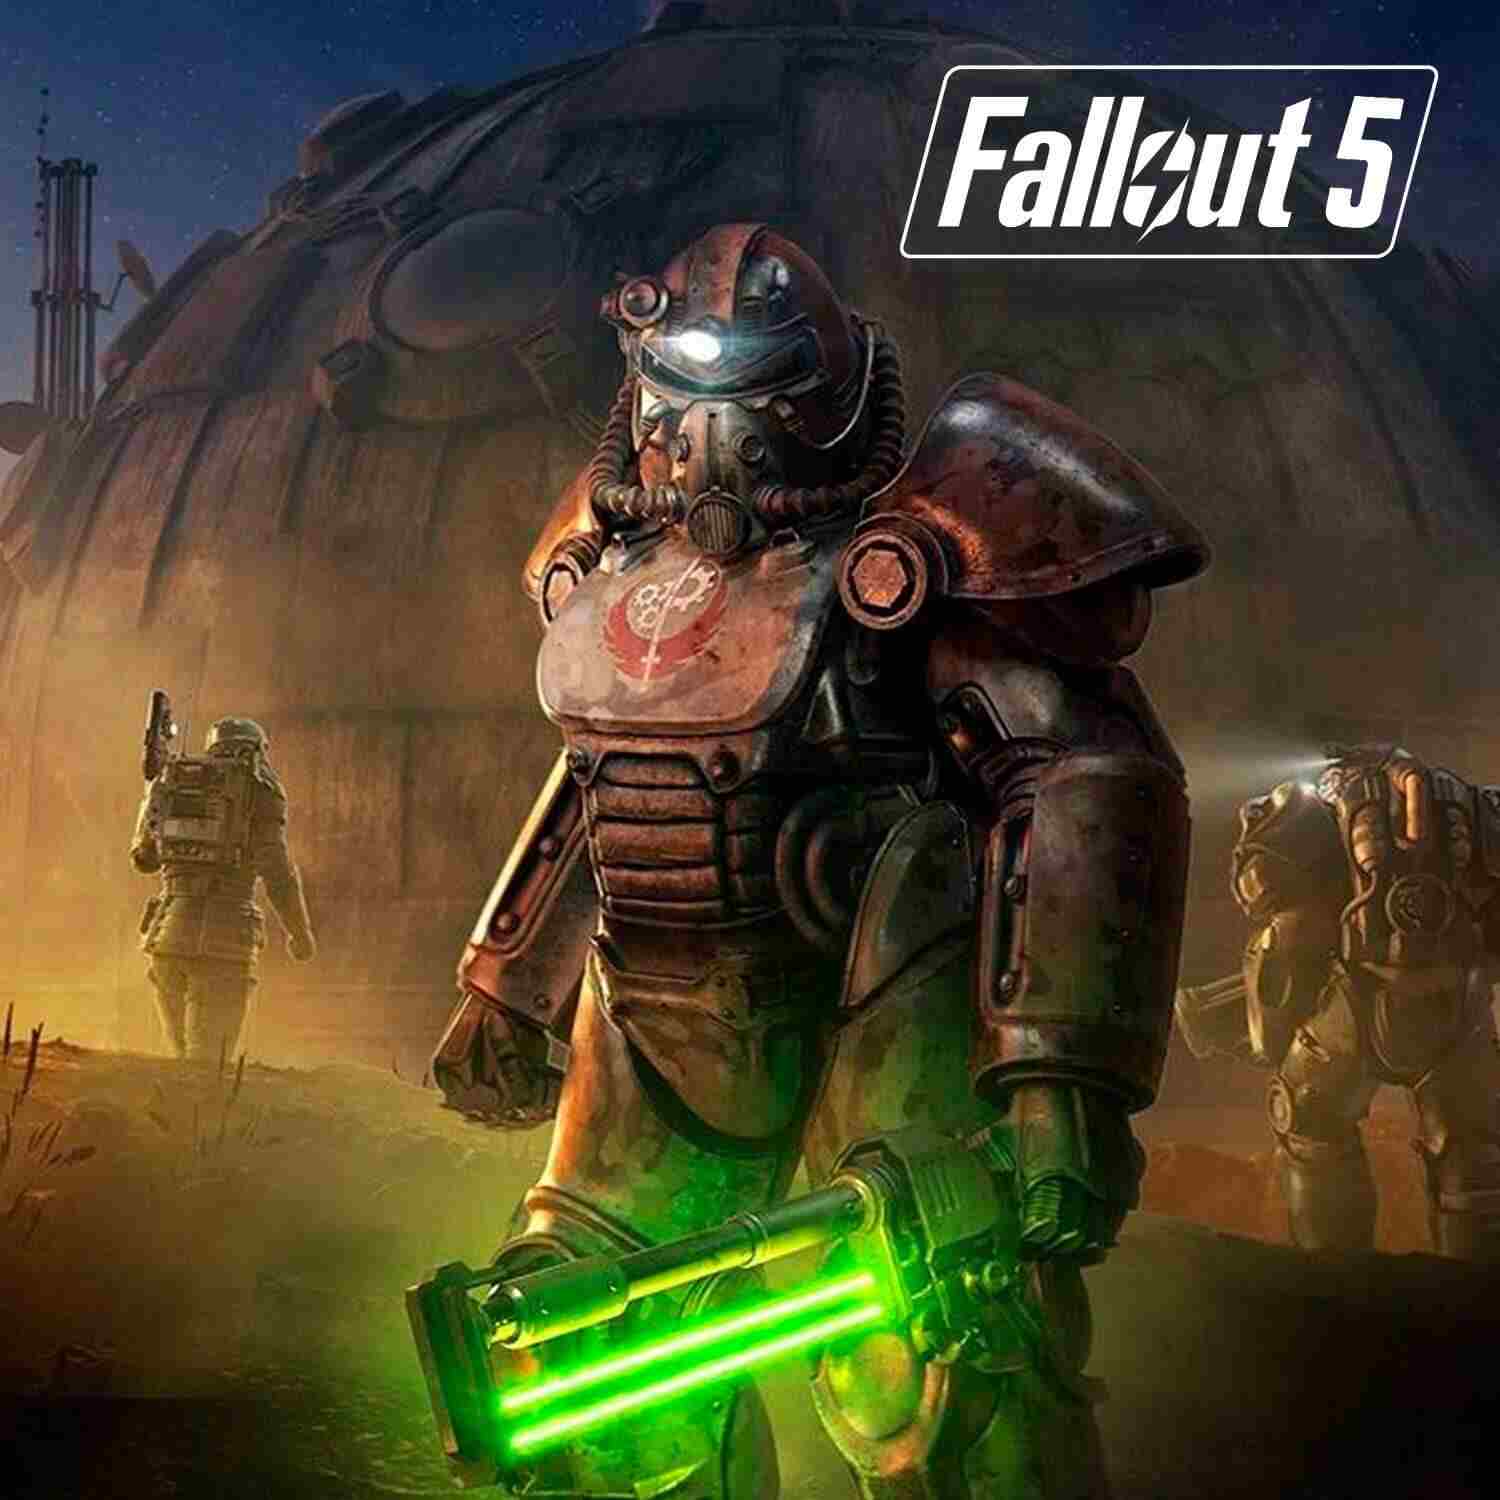 Director de Bethesda confirma que habrá Fallout 5